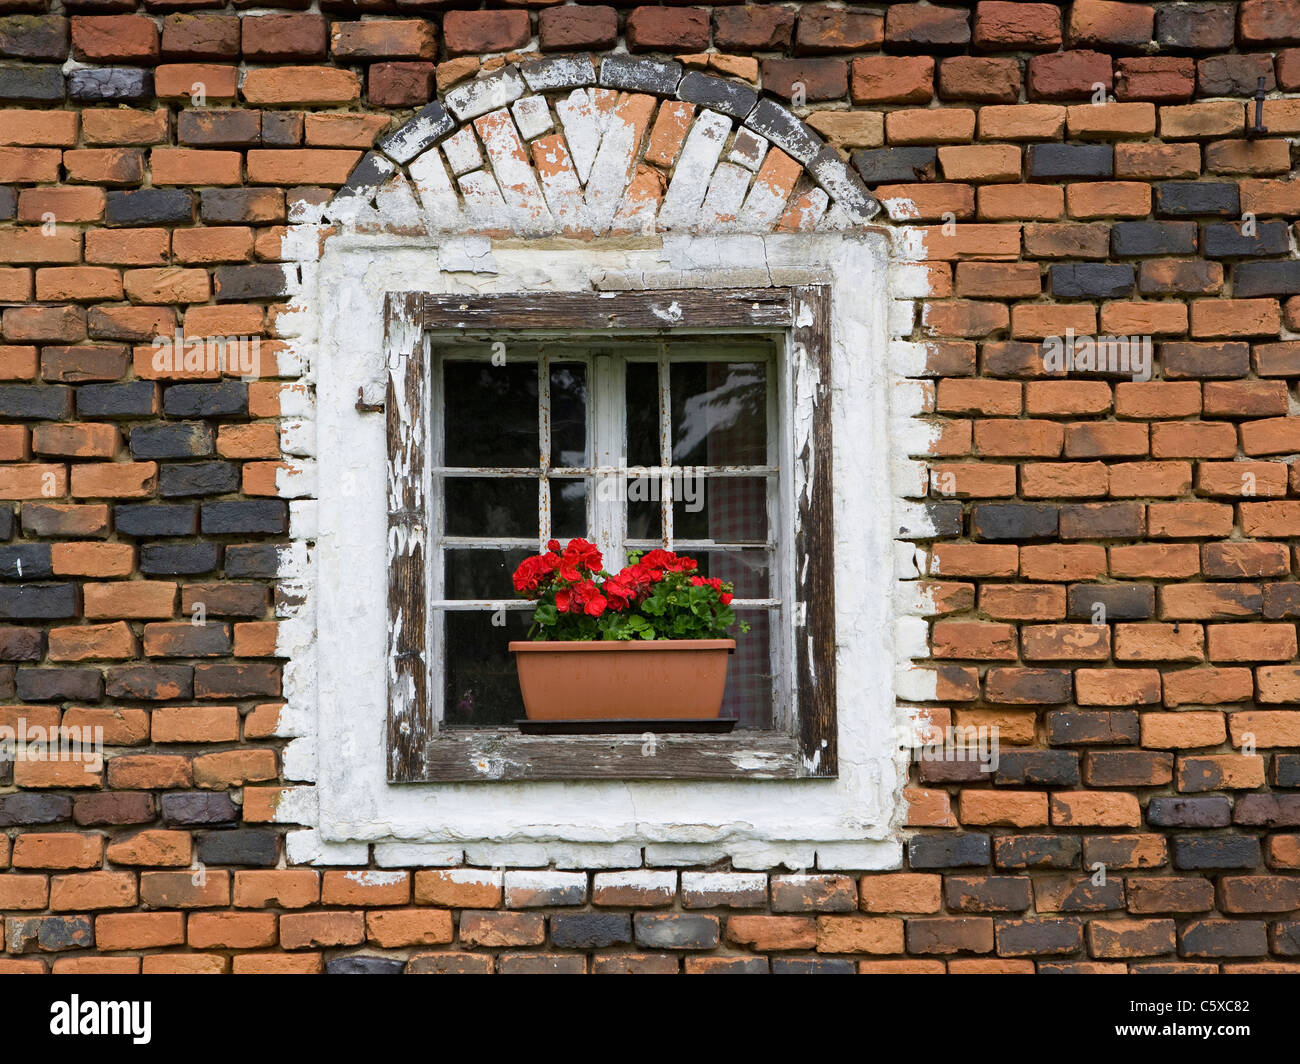 Austria, Upper Austria, Window with flower box Stock Photo